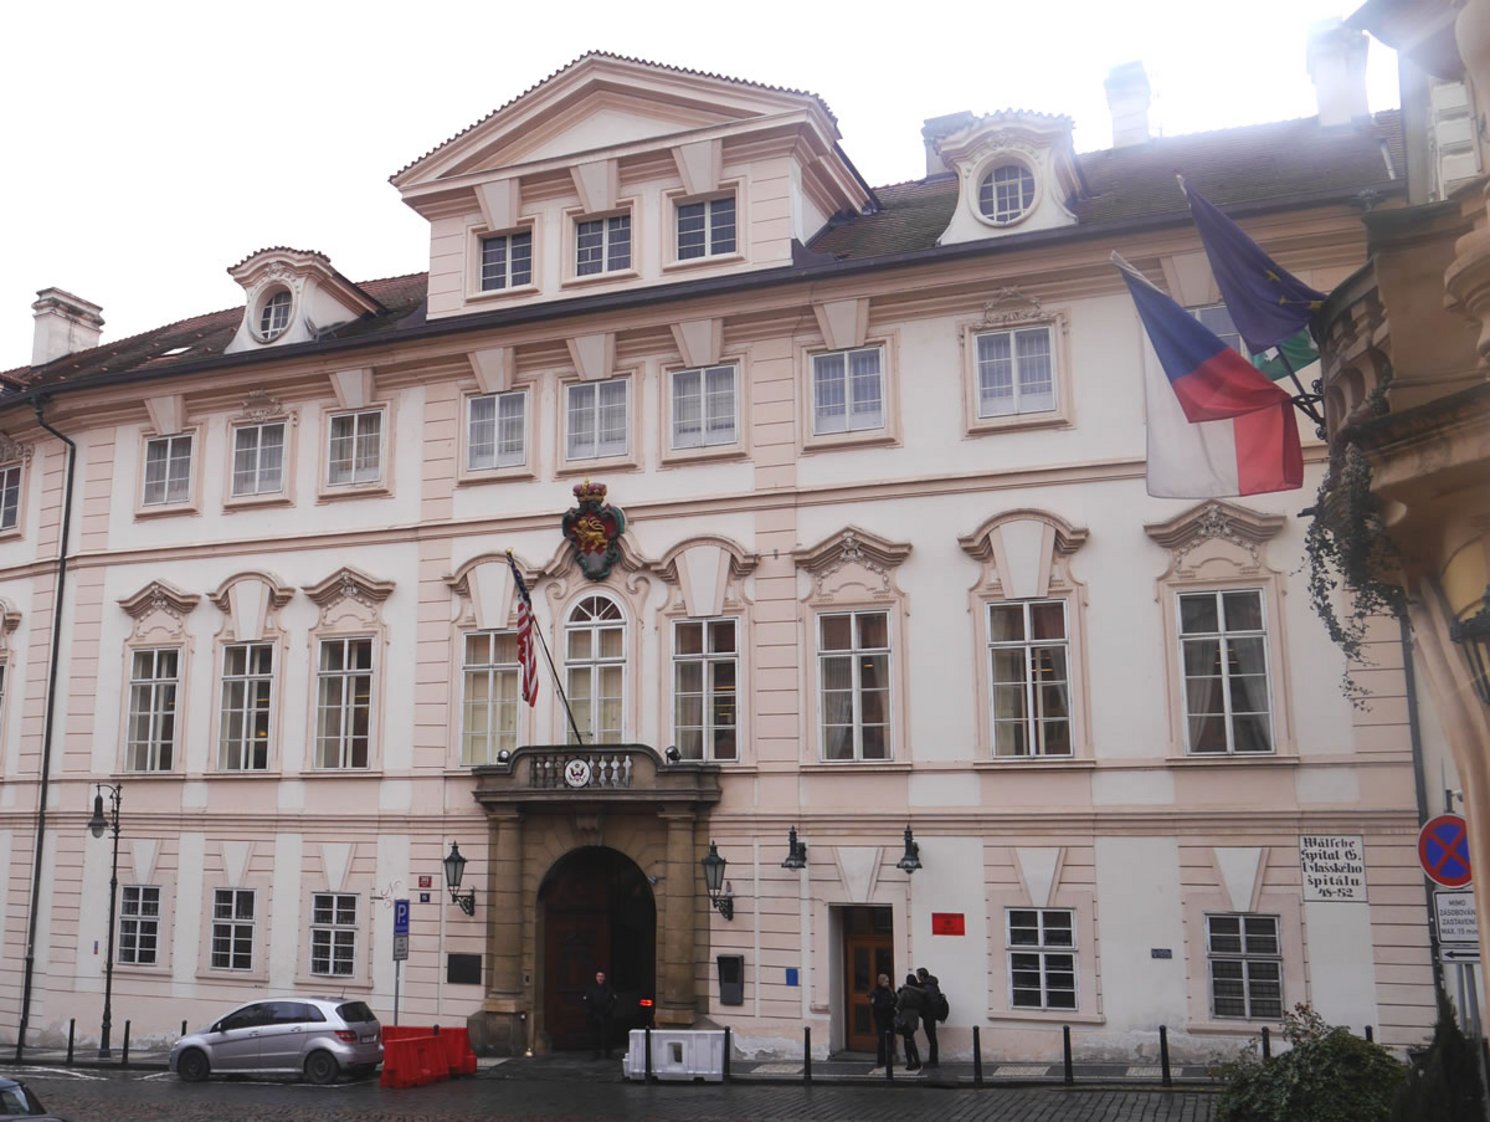 Bild des Palais Schönborns